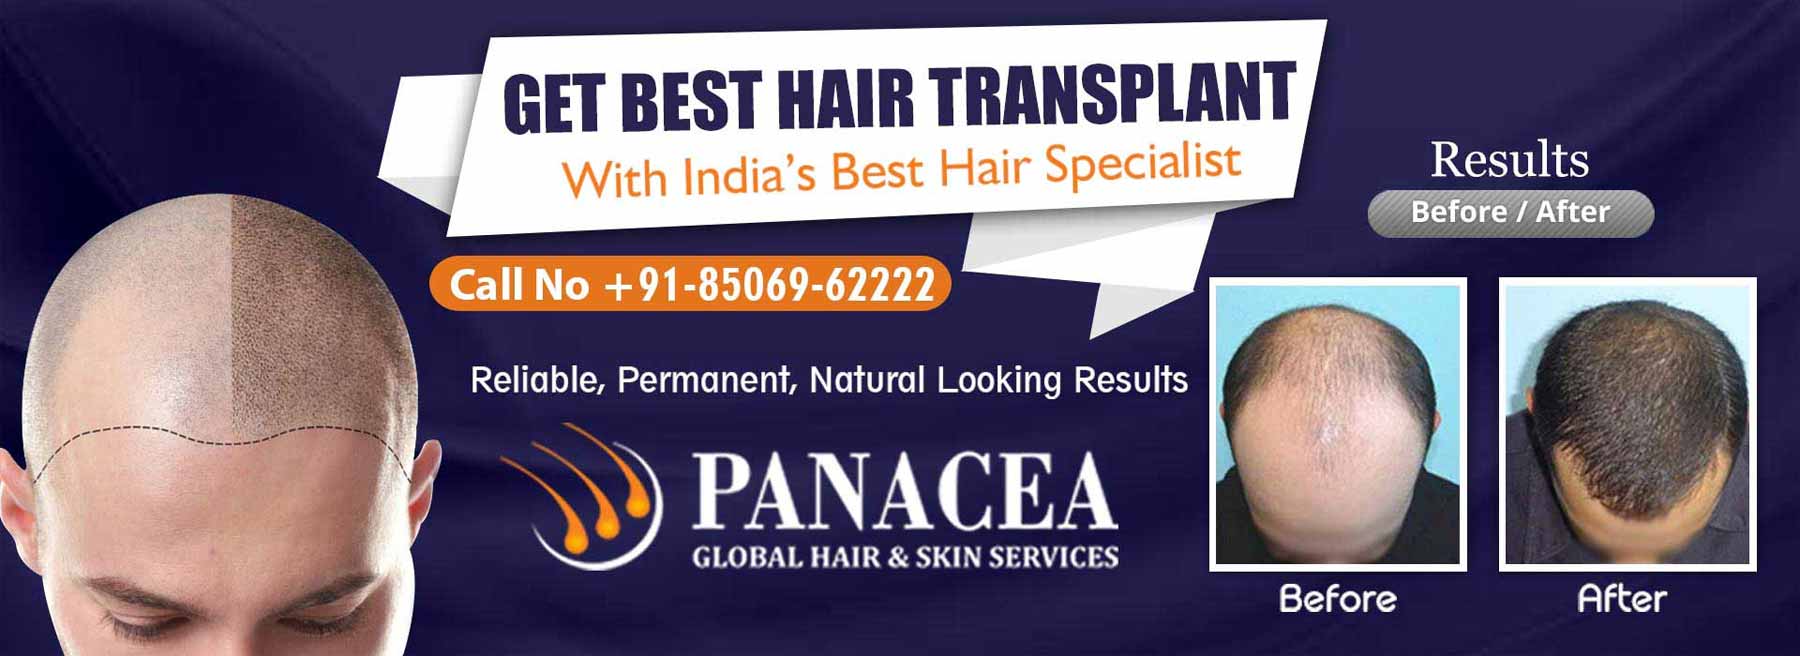 Get Best Hair Transplant - Panacea Global in Ghaziabad